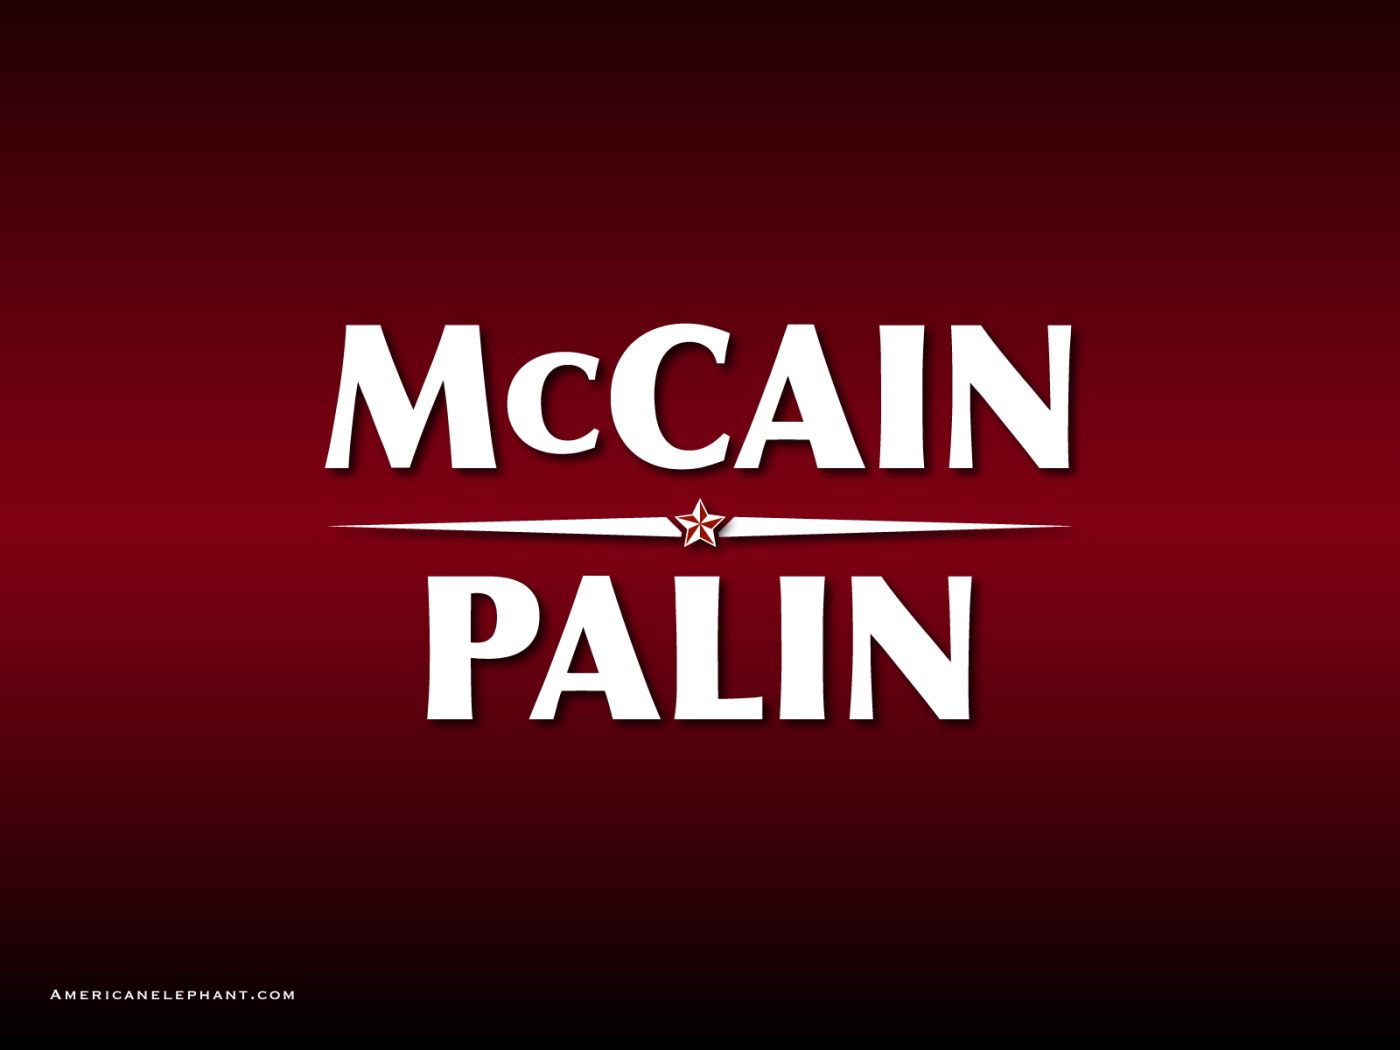 Маккейн Пейлин 2008 / McCain Palin 2008